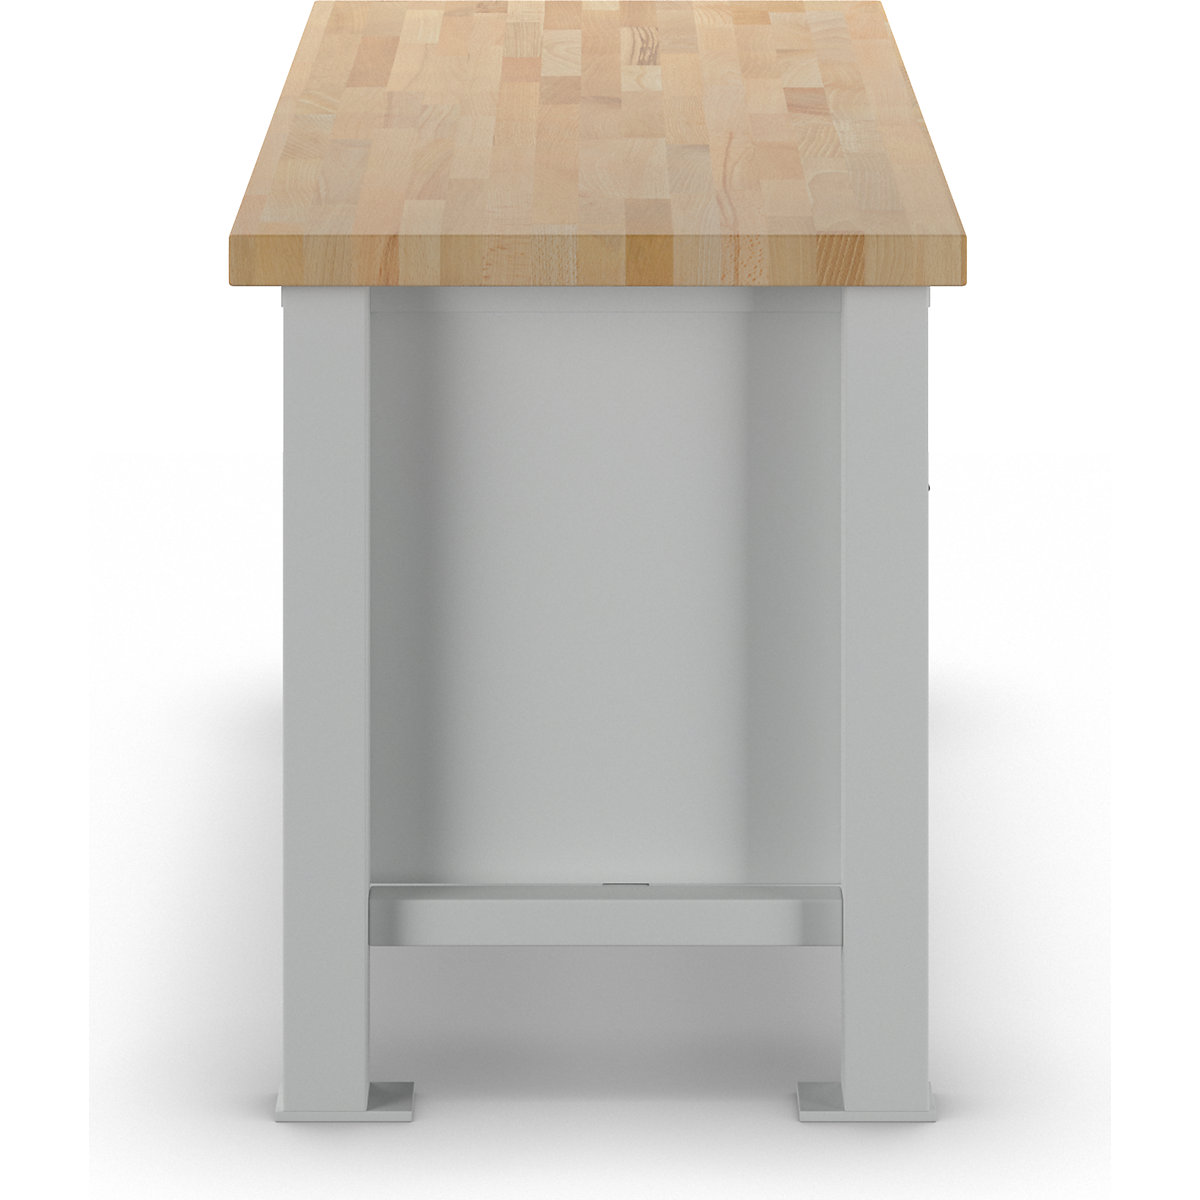 Stół warsztatowy do dużych obciążeń – ANKE (Zdjęcie produktu 2)-1